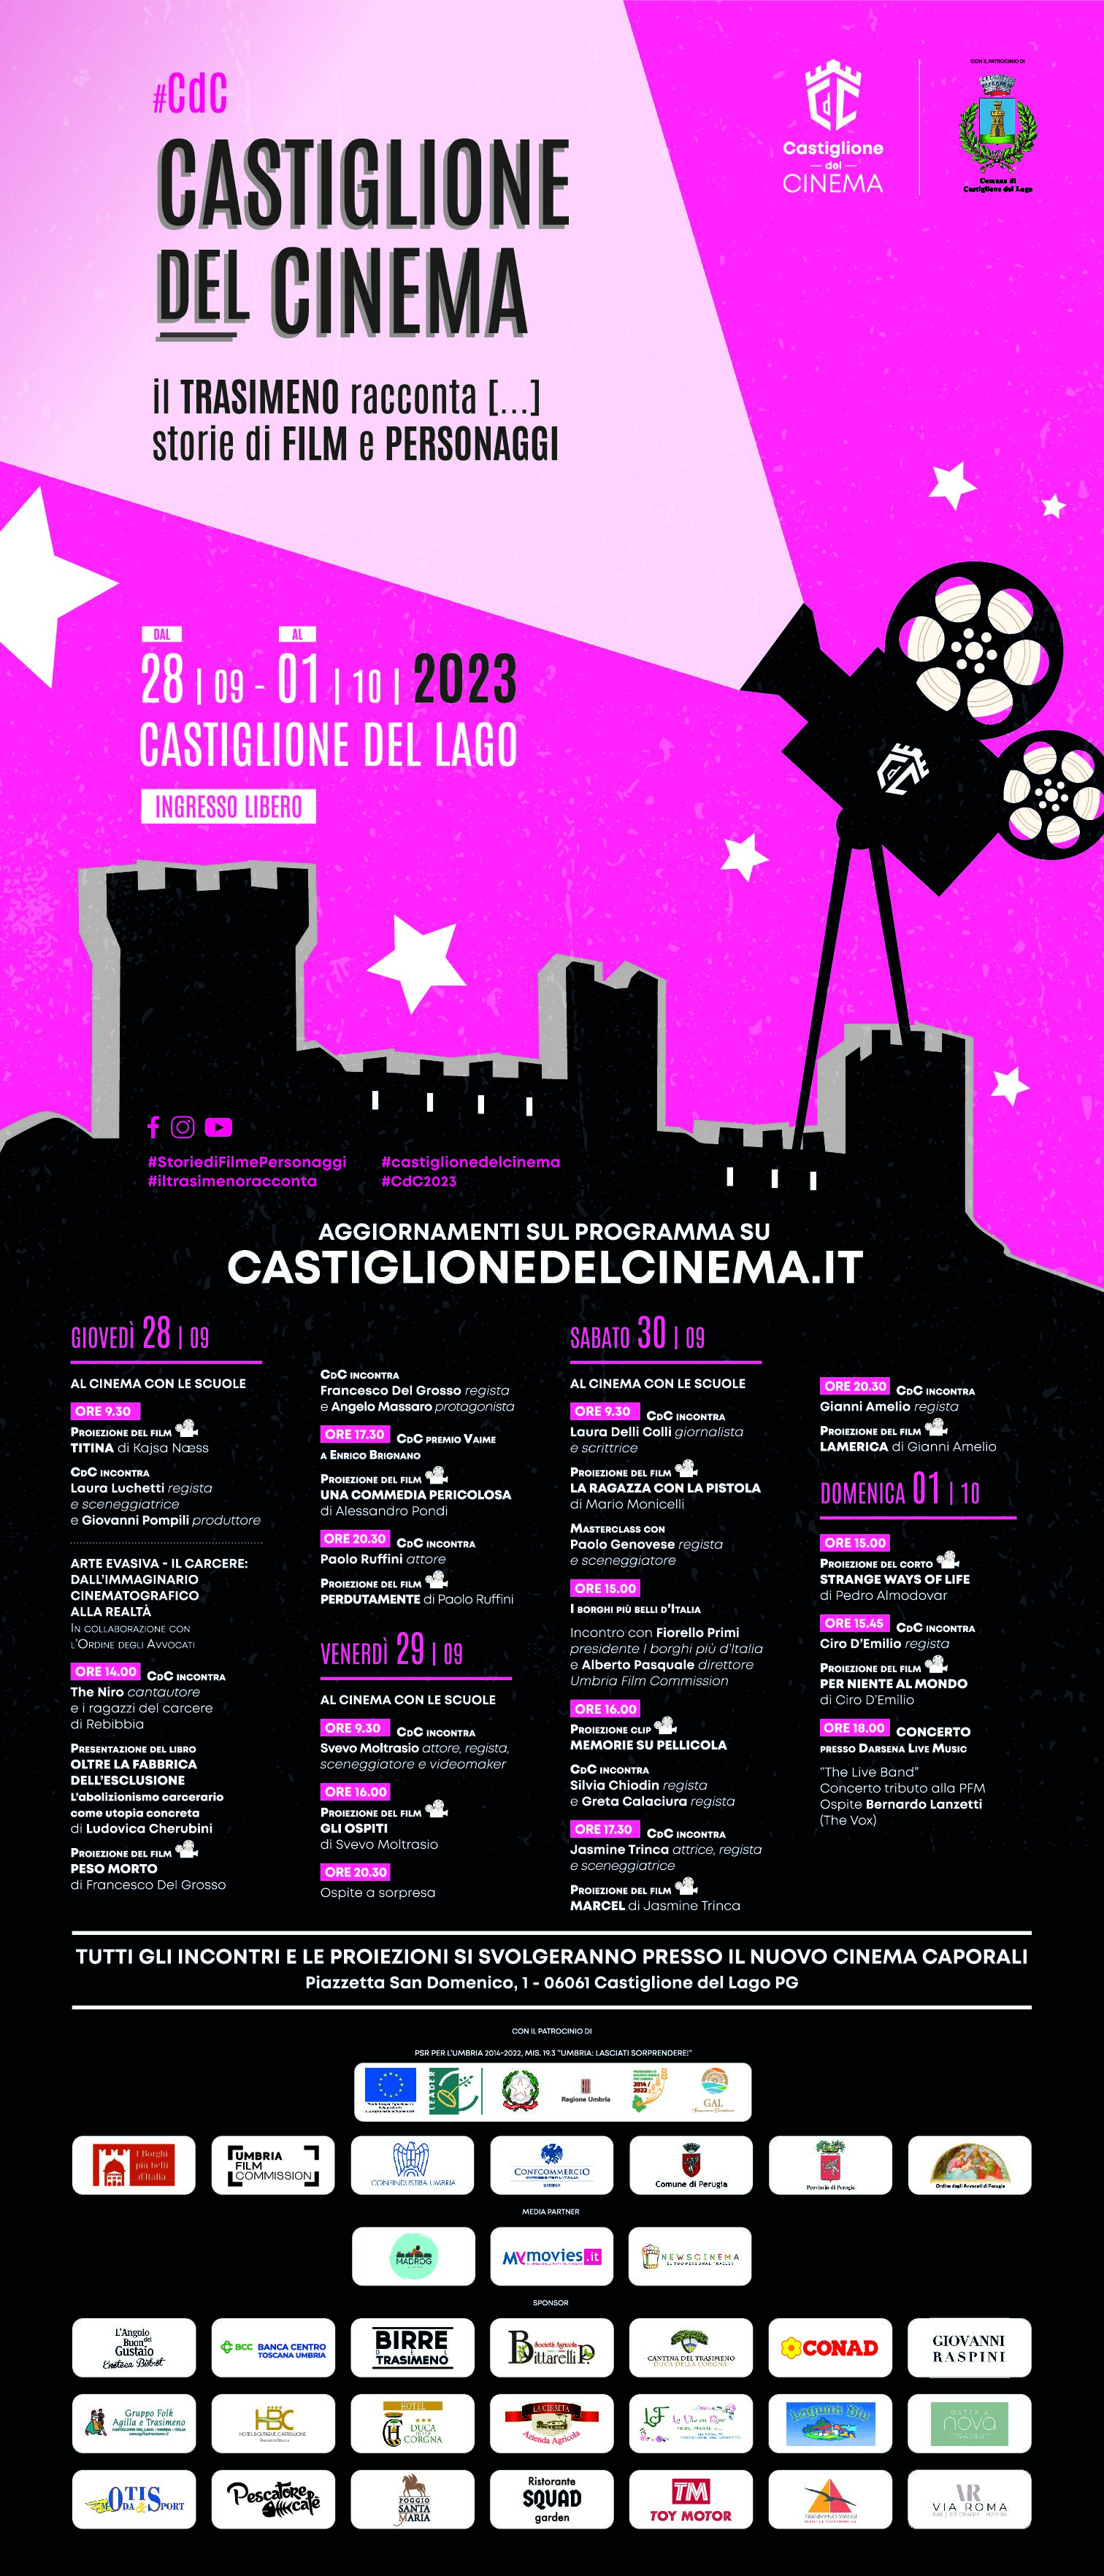 CASTIGLIONE DEL CINEMA – FESTIVAL